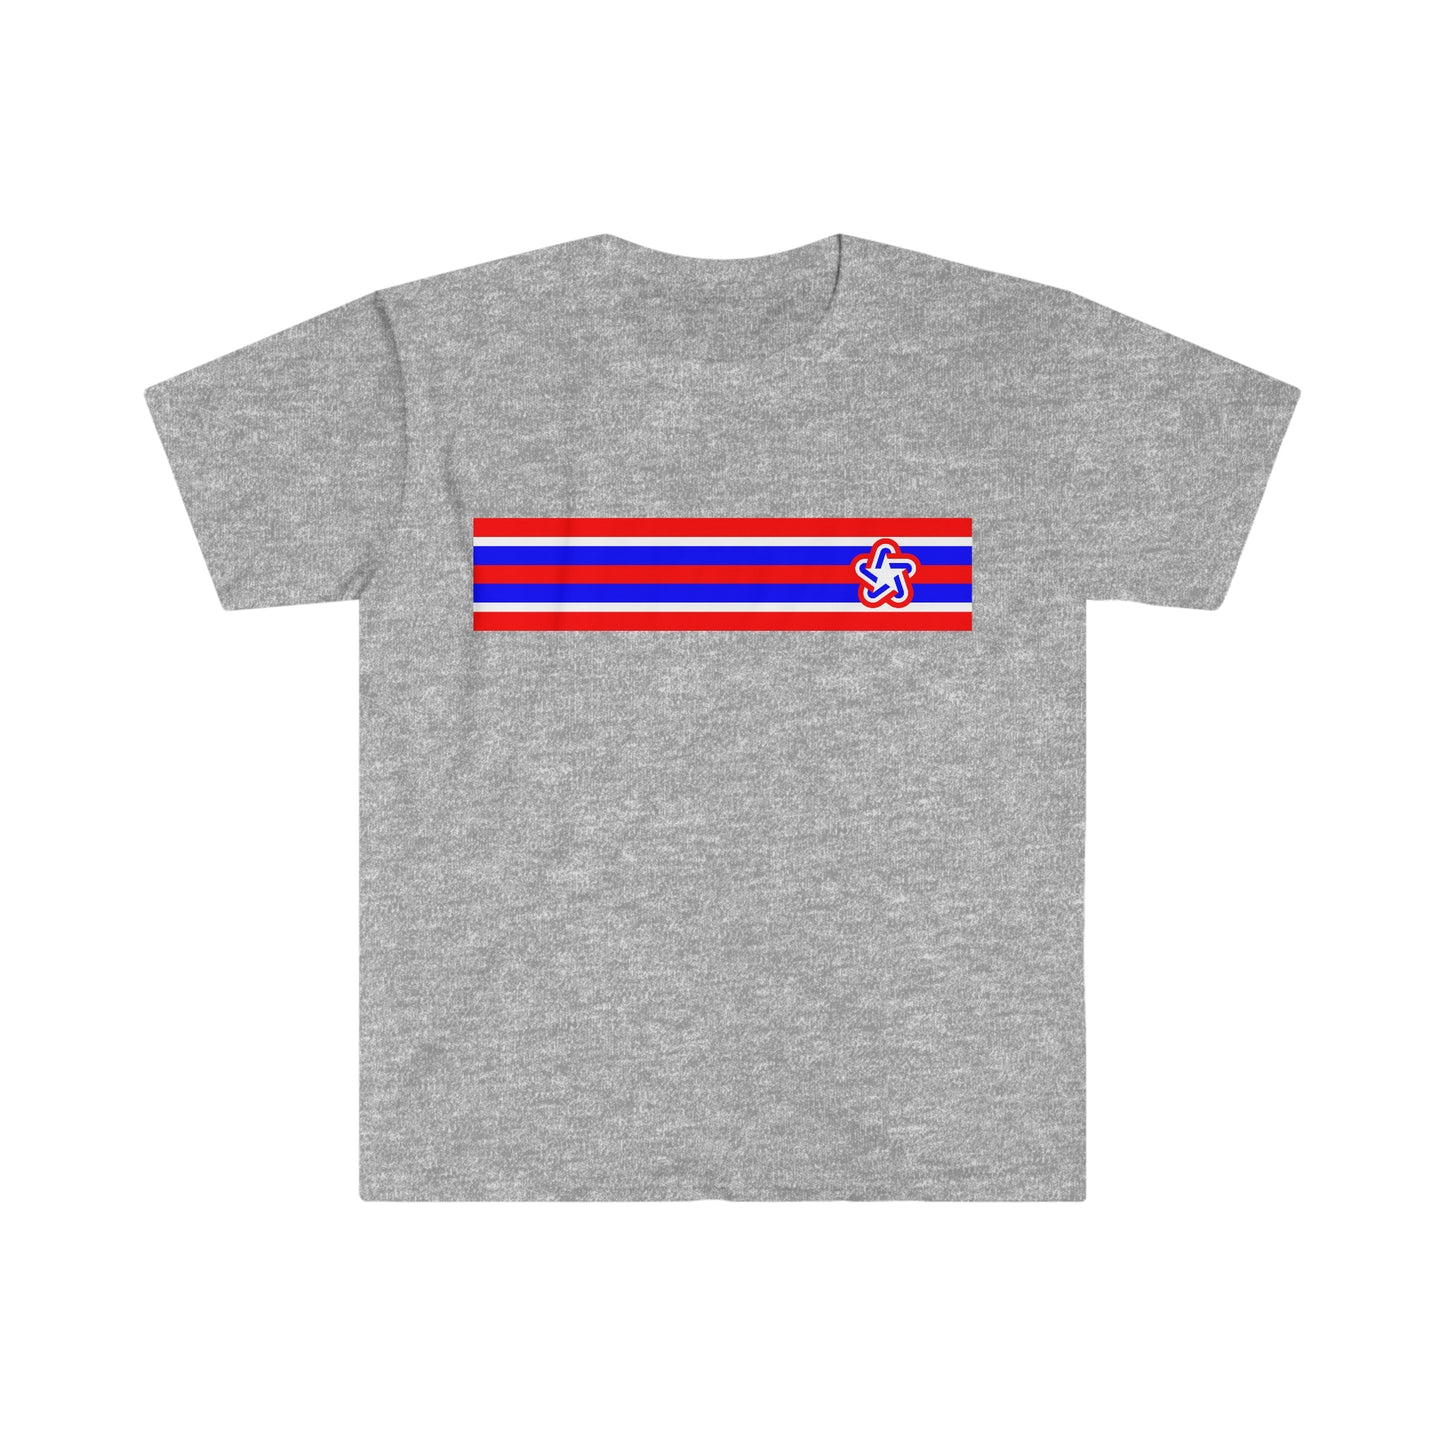 USA Bicentennial Star Stripe - T-Shirt